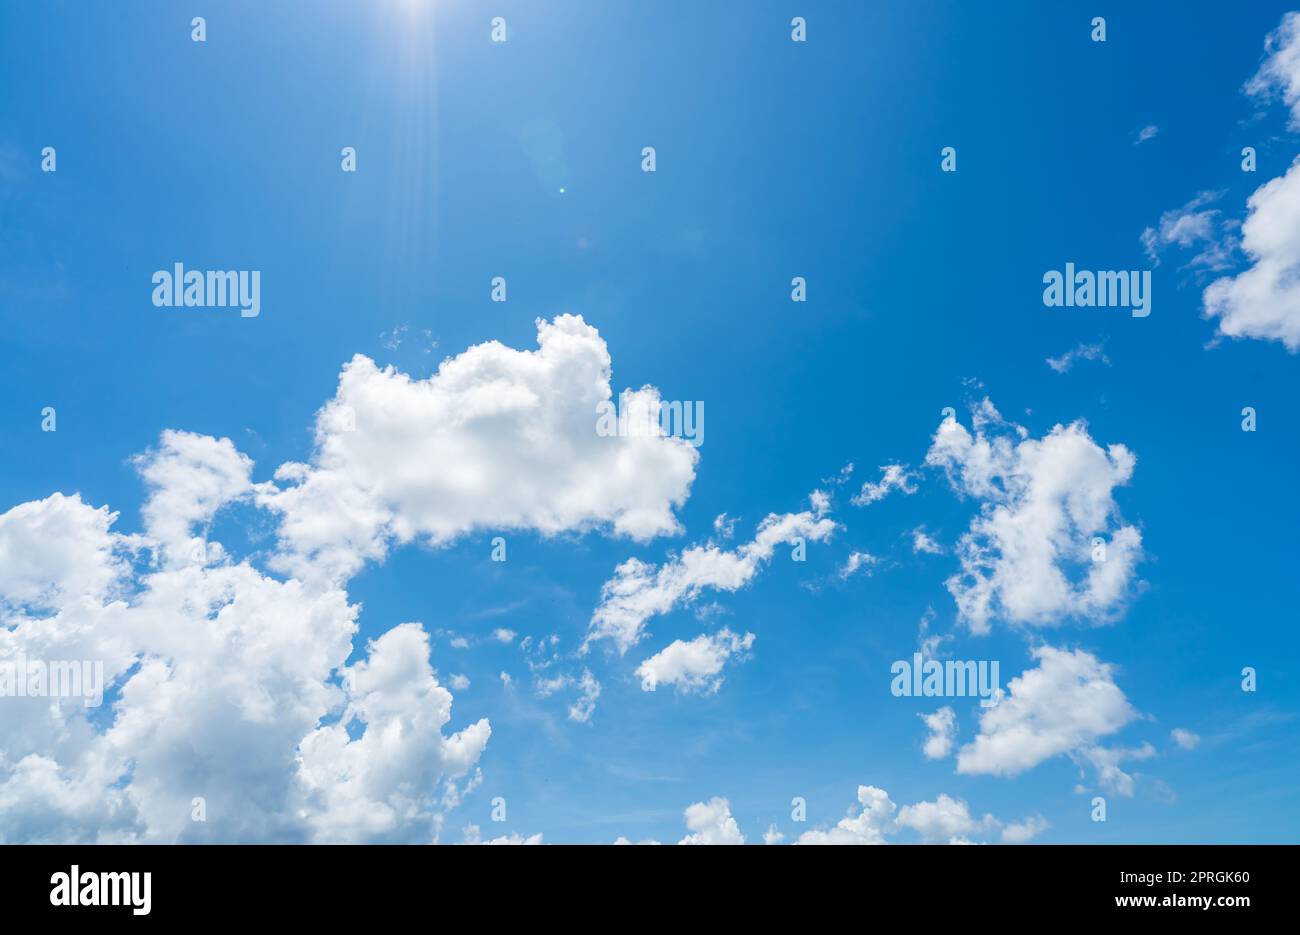 Cielo azul y nubes blancas con la luz del sol en día soleado. Concepto del día mundial del ozono. Fondo azul del cielo para el día internacional para la preservación de la capa de ozono. Cloudscape. Clima caluroso en verano. Foto de stock